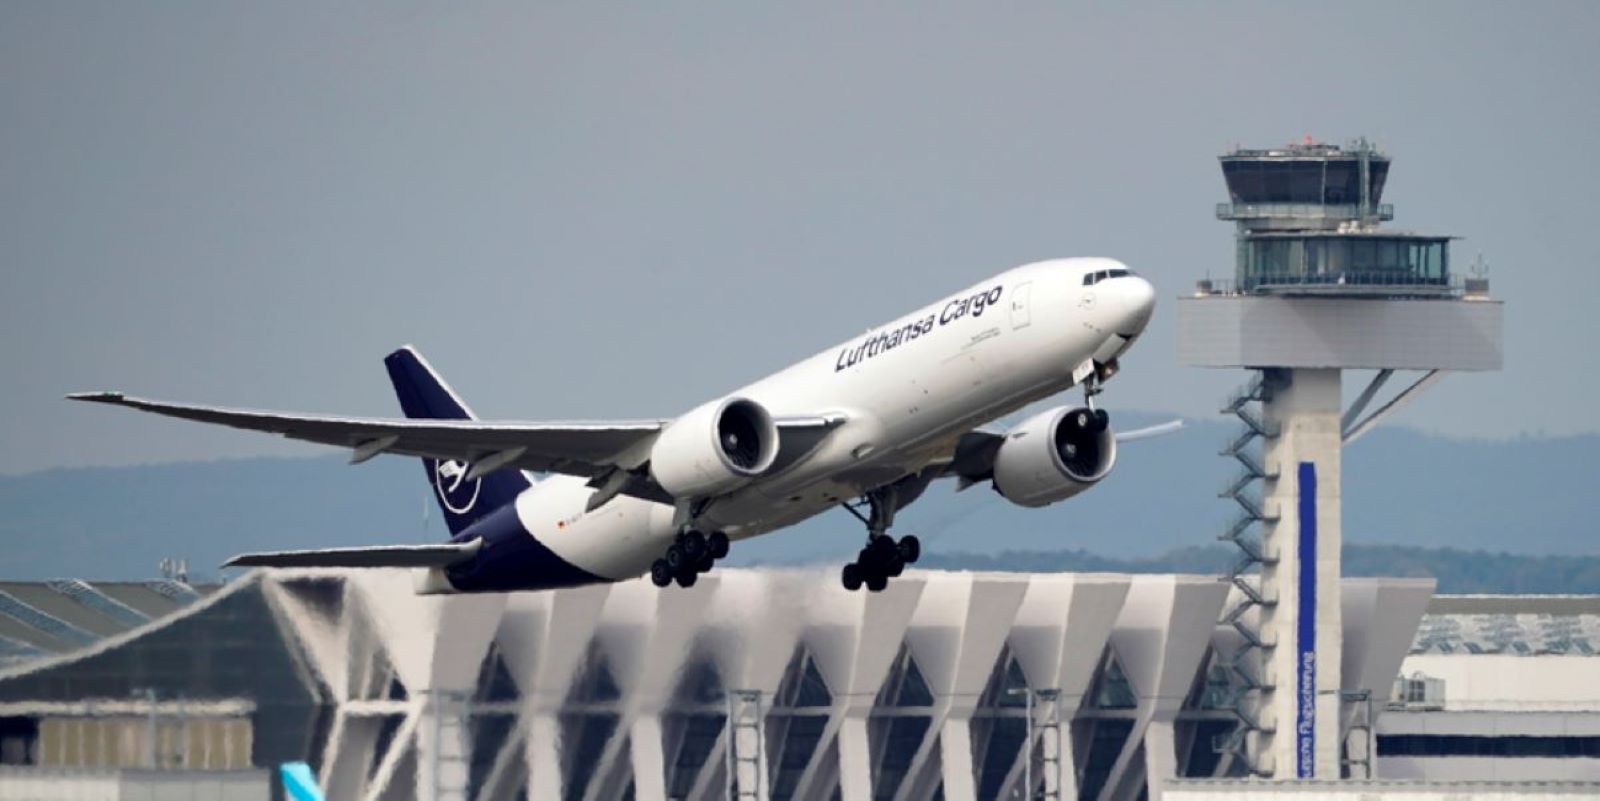 Μιλάνο: Τρομακτική απογείωση Boeing 777 με την ουρά του να χτυπά στο έδαφος